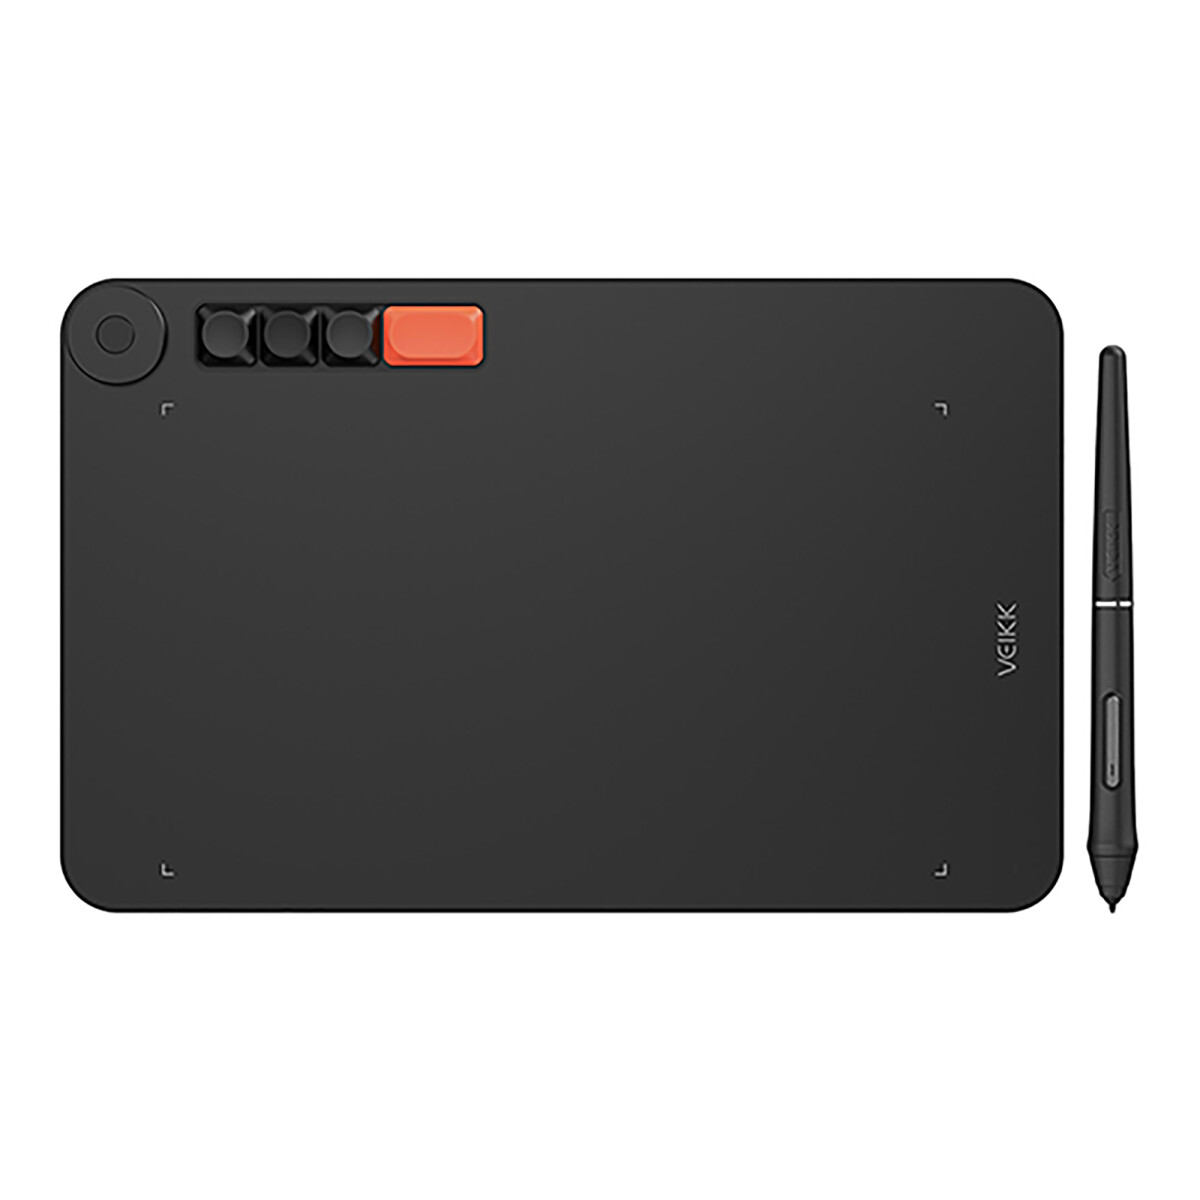 Tablet Digitalizadora 10x6 Veikk - Unica 